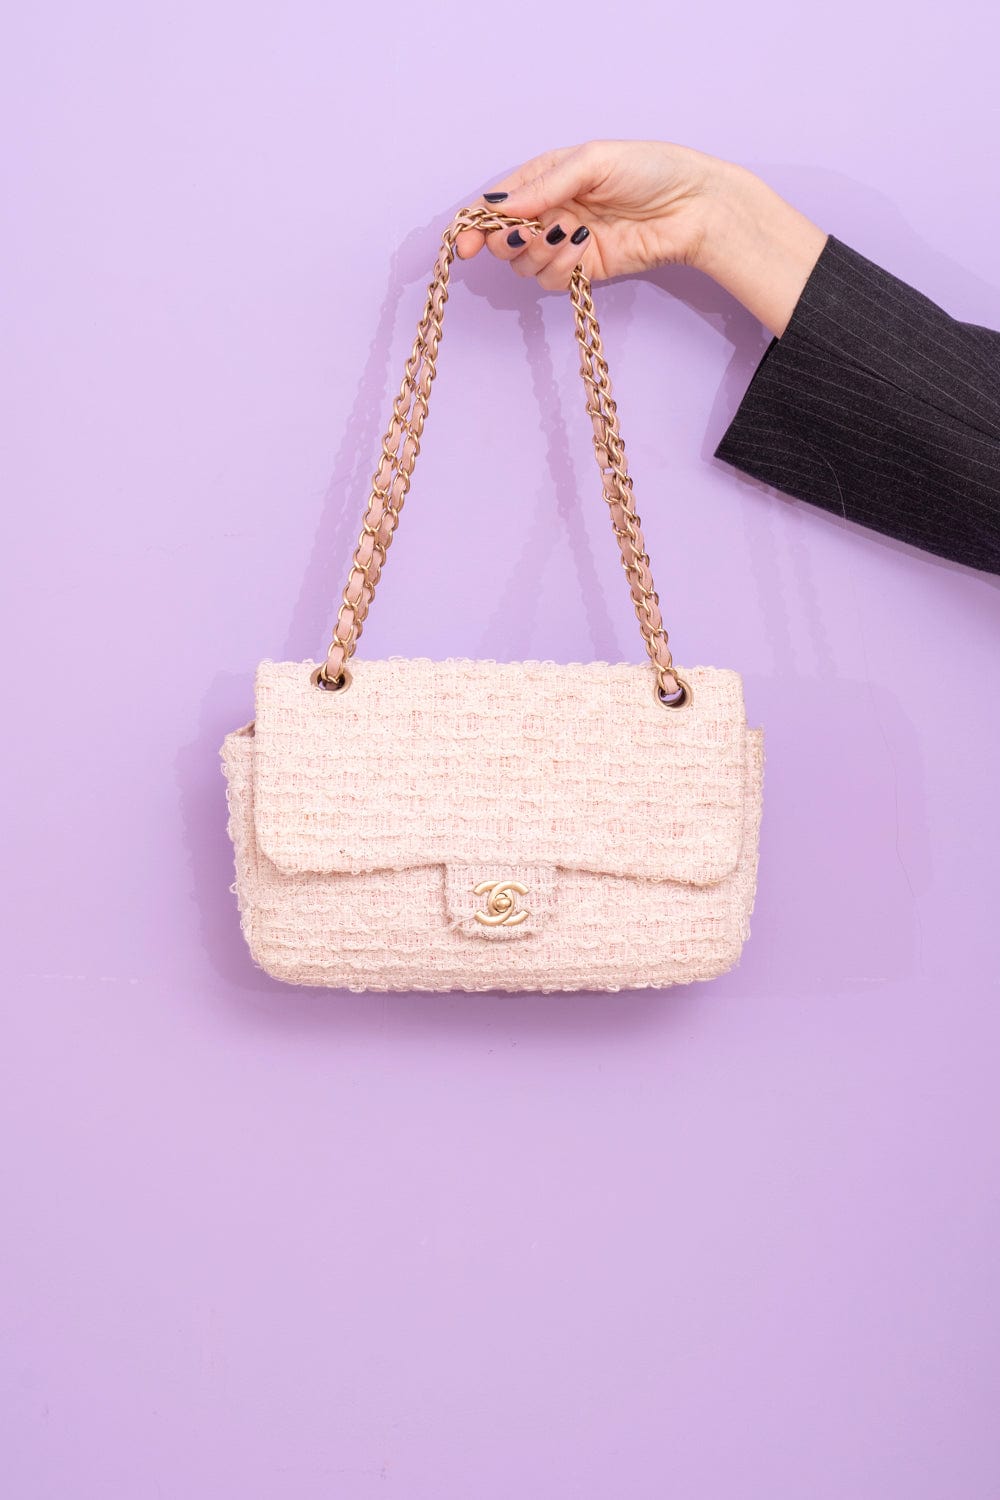 Chanel Pink & White Tweed Shoulder Bag with Brushed Gold Hardware., Lot  #56253